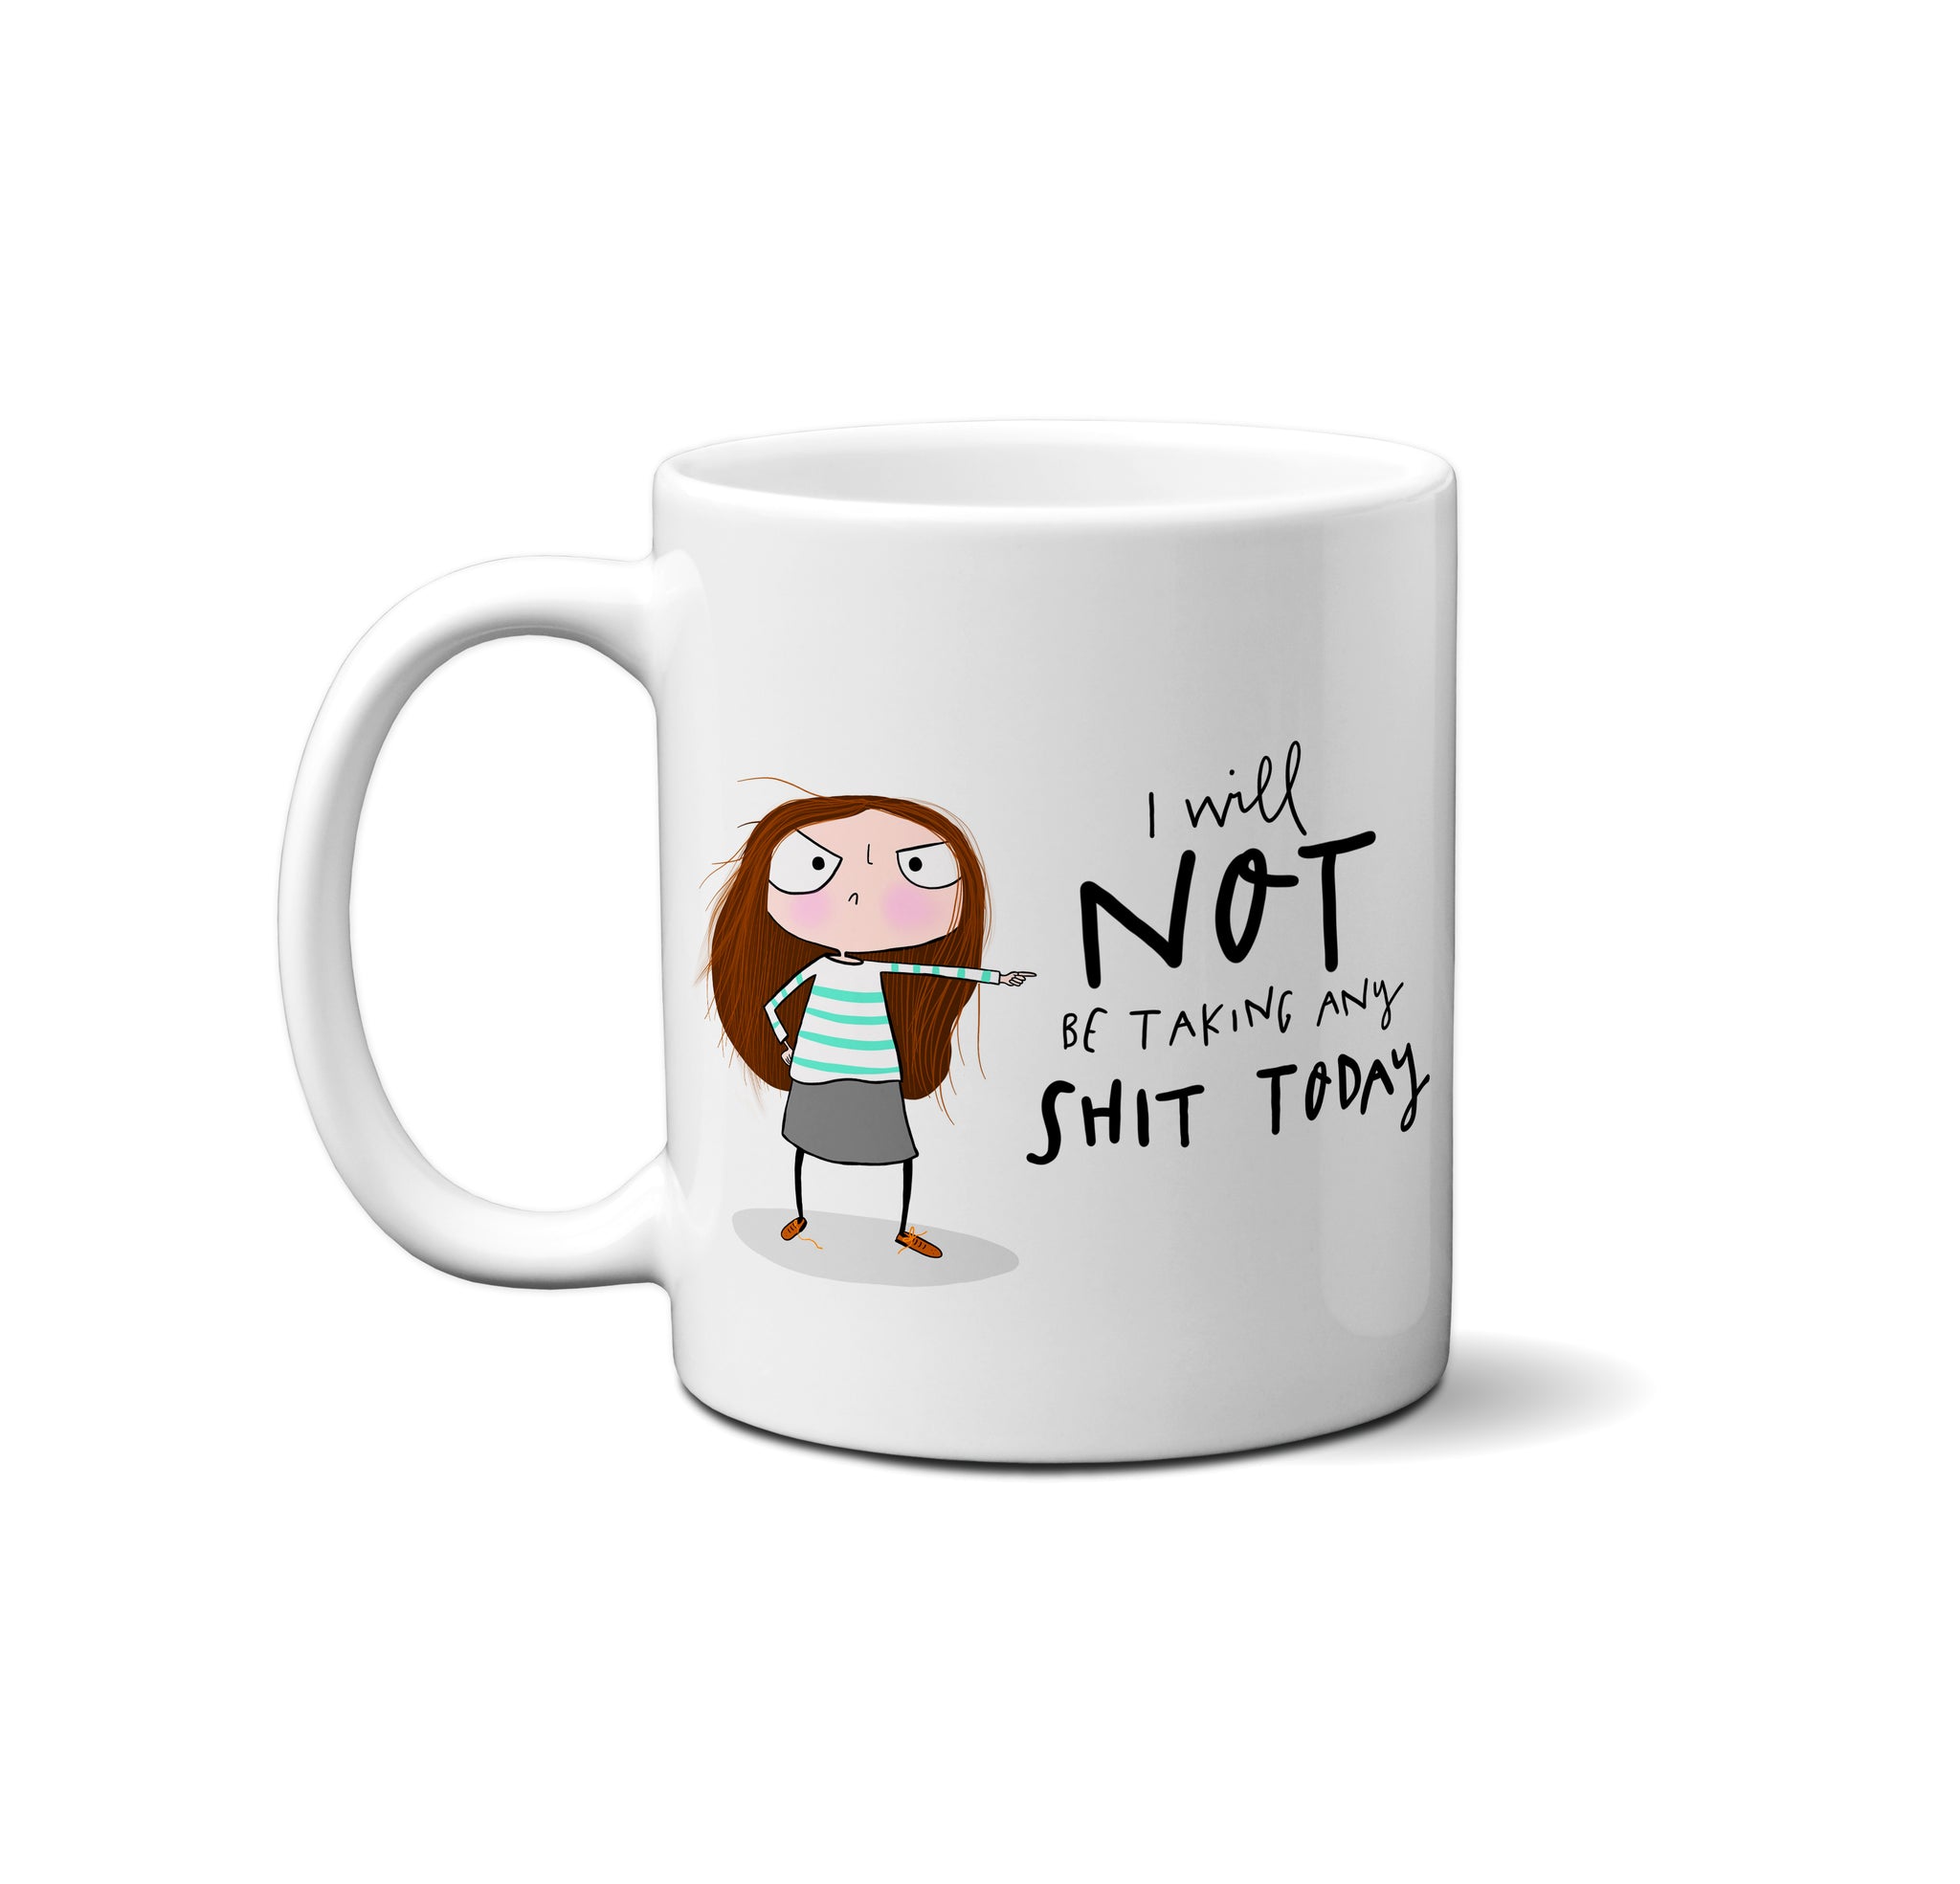 No shit today mug